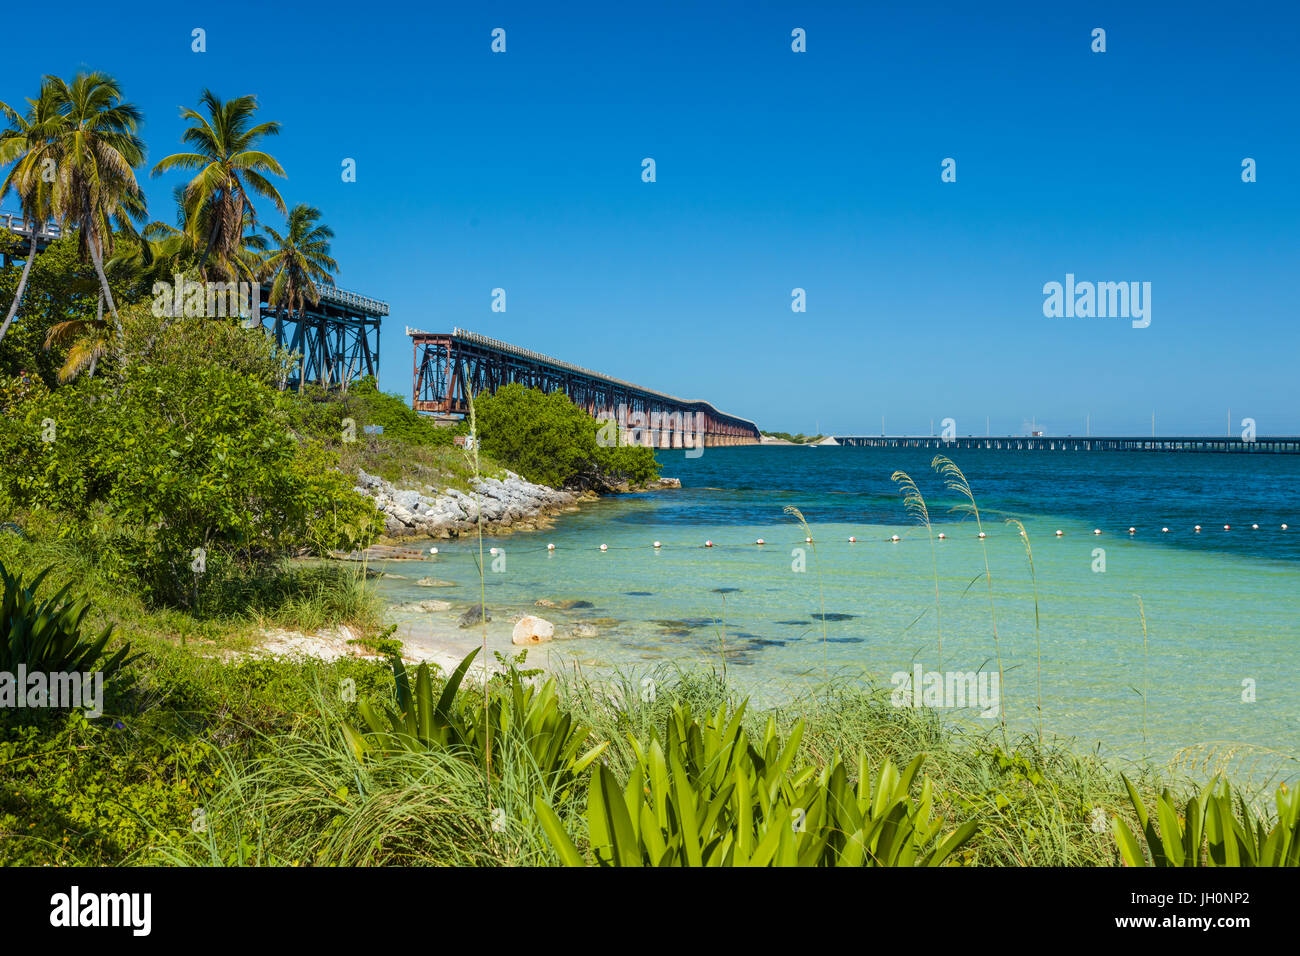 Vieux Bahia Honda Bidge rail une partie de l'Outre-mer, construit par Henry Flagler dans les Florida Keys Banque D'Images